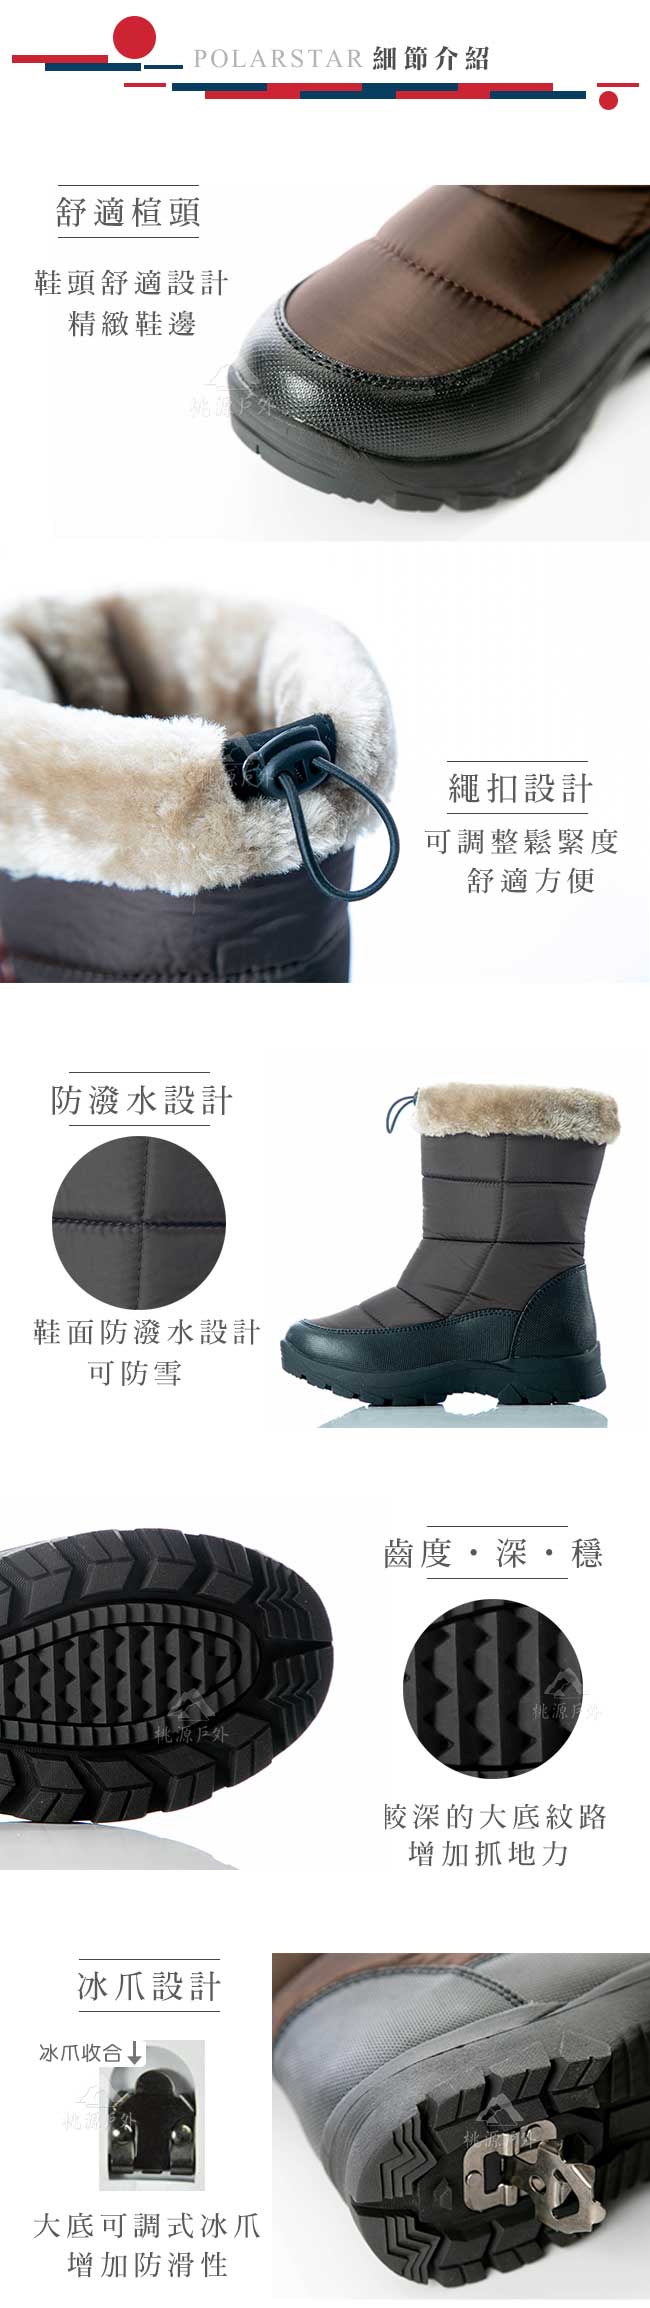 PolarStar 女保暖雪鞋『棕』P18628 (冰爪 / 內厚鋪毛 /防滑鞋底)